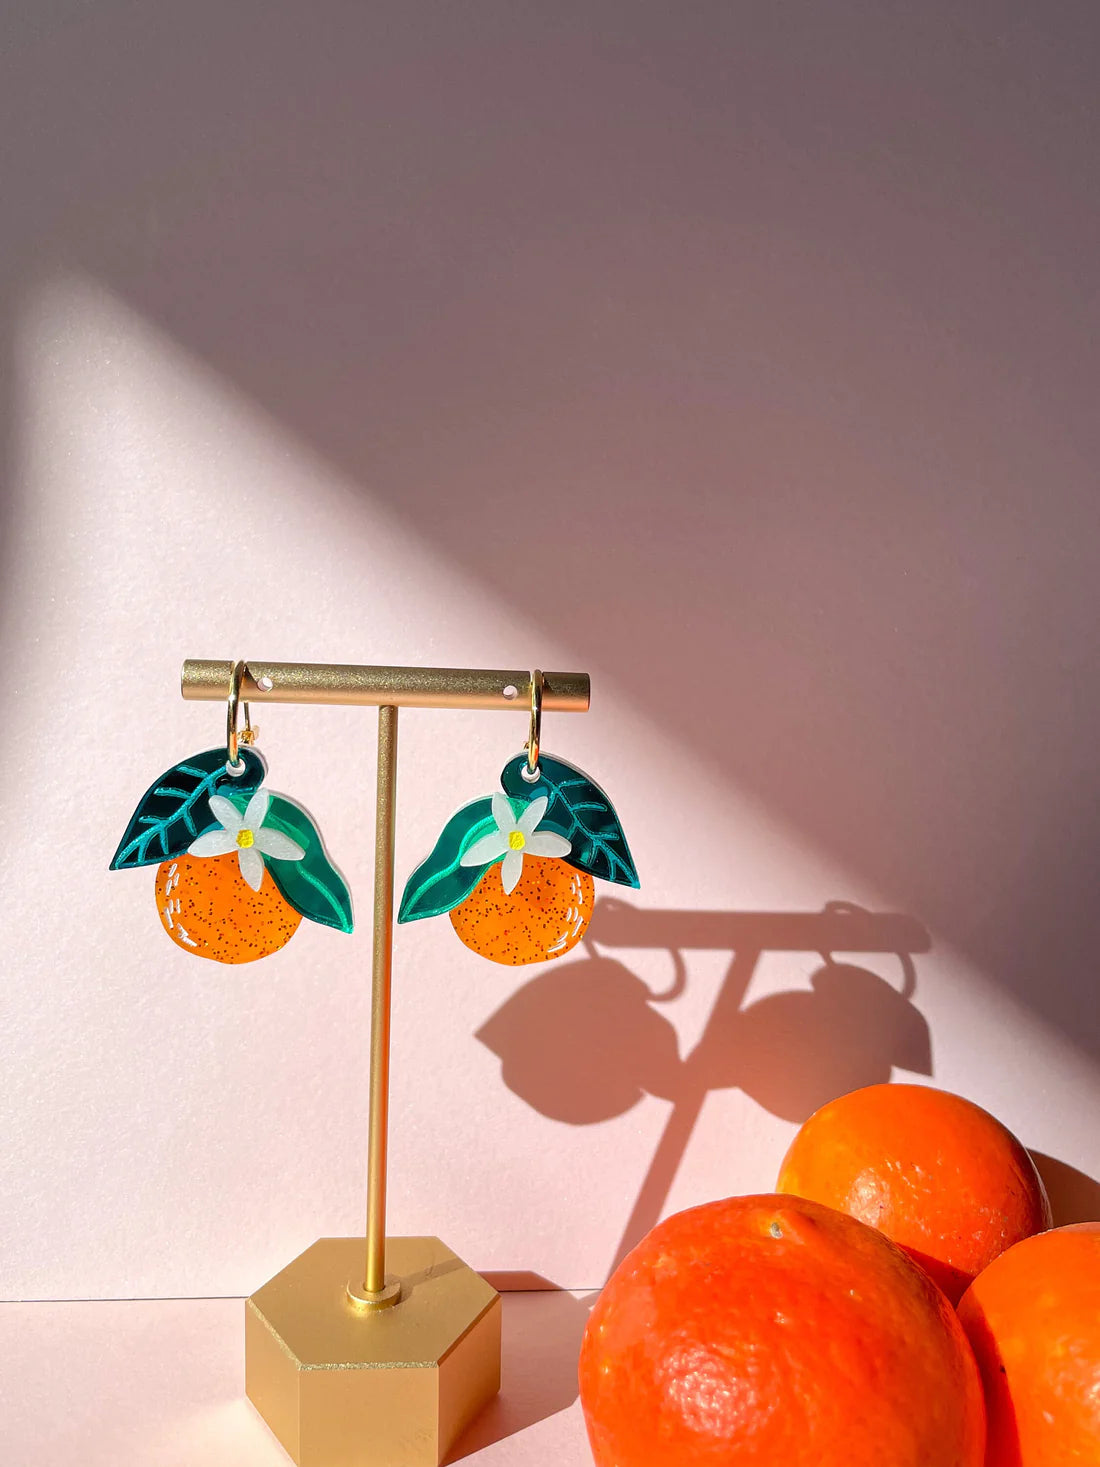 acrylic orange dangle earrings on jewelry stand 